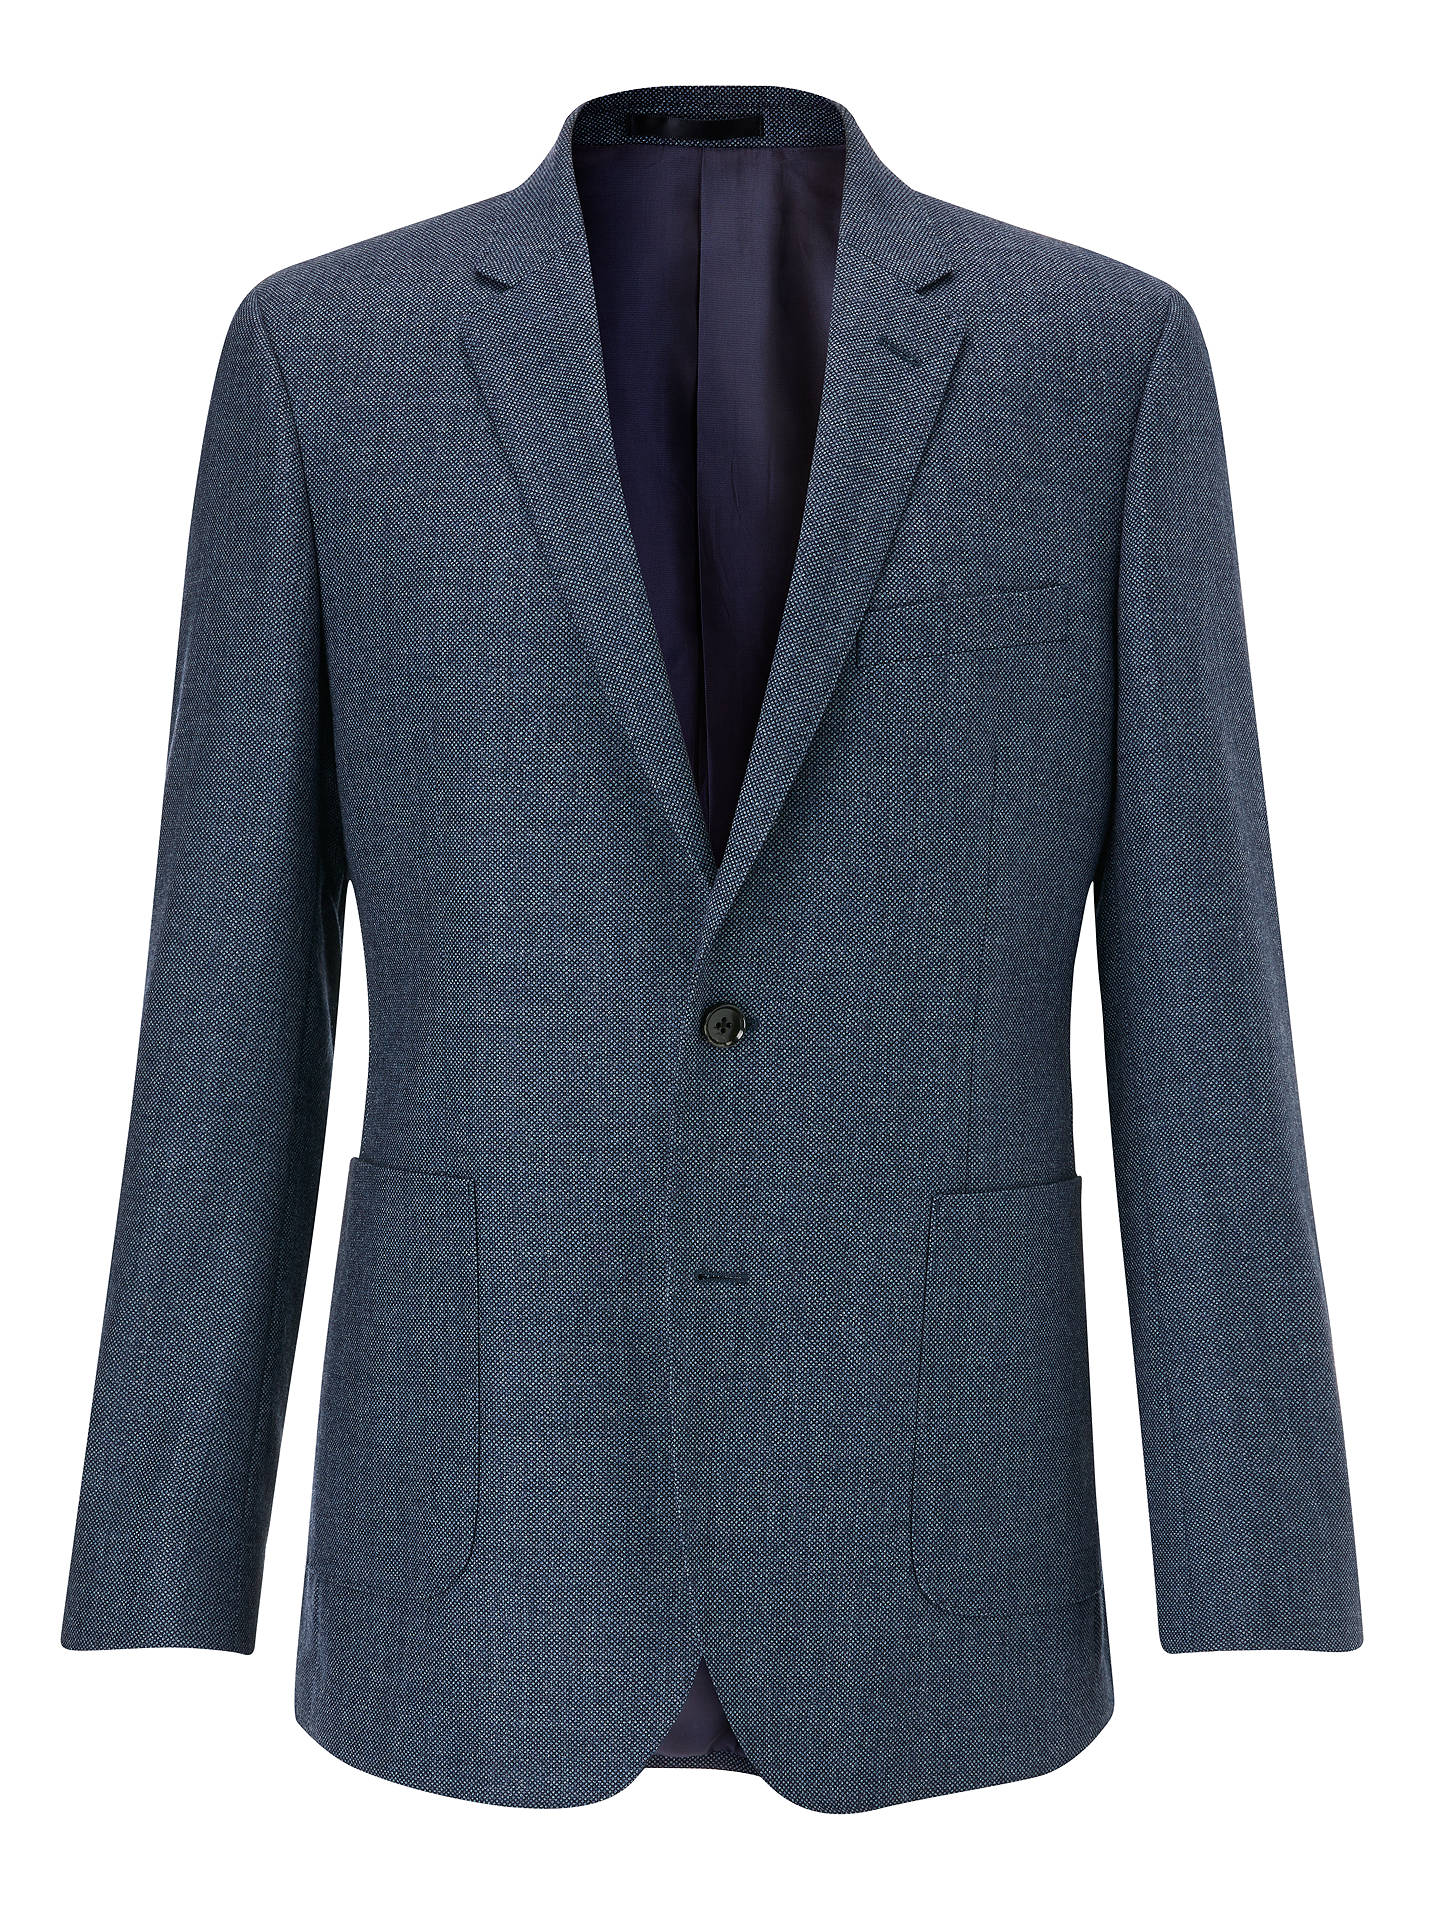 John Lewis & Partners Birdseye Wool Tailored Blazer, Blue at John Lewis ...